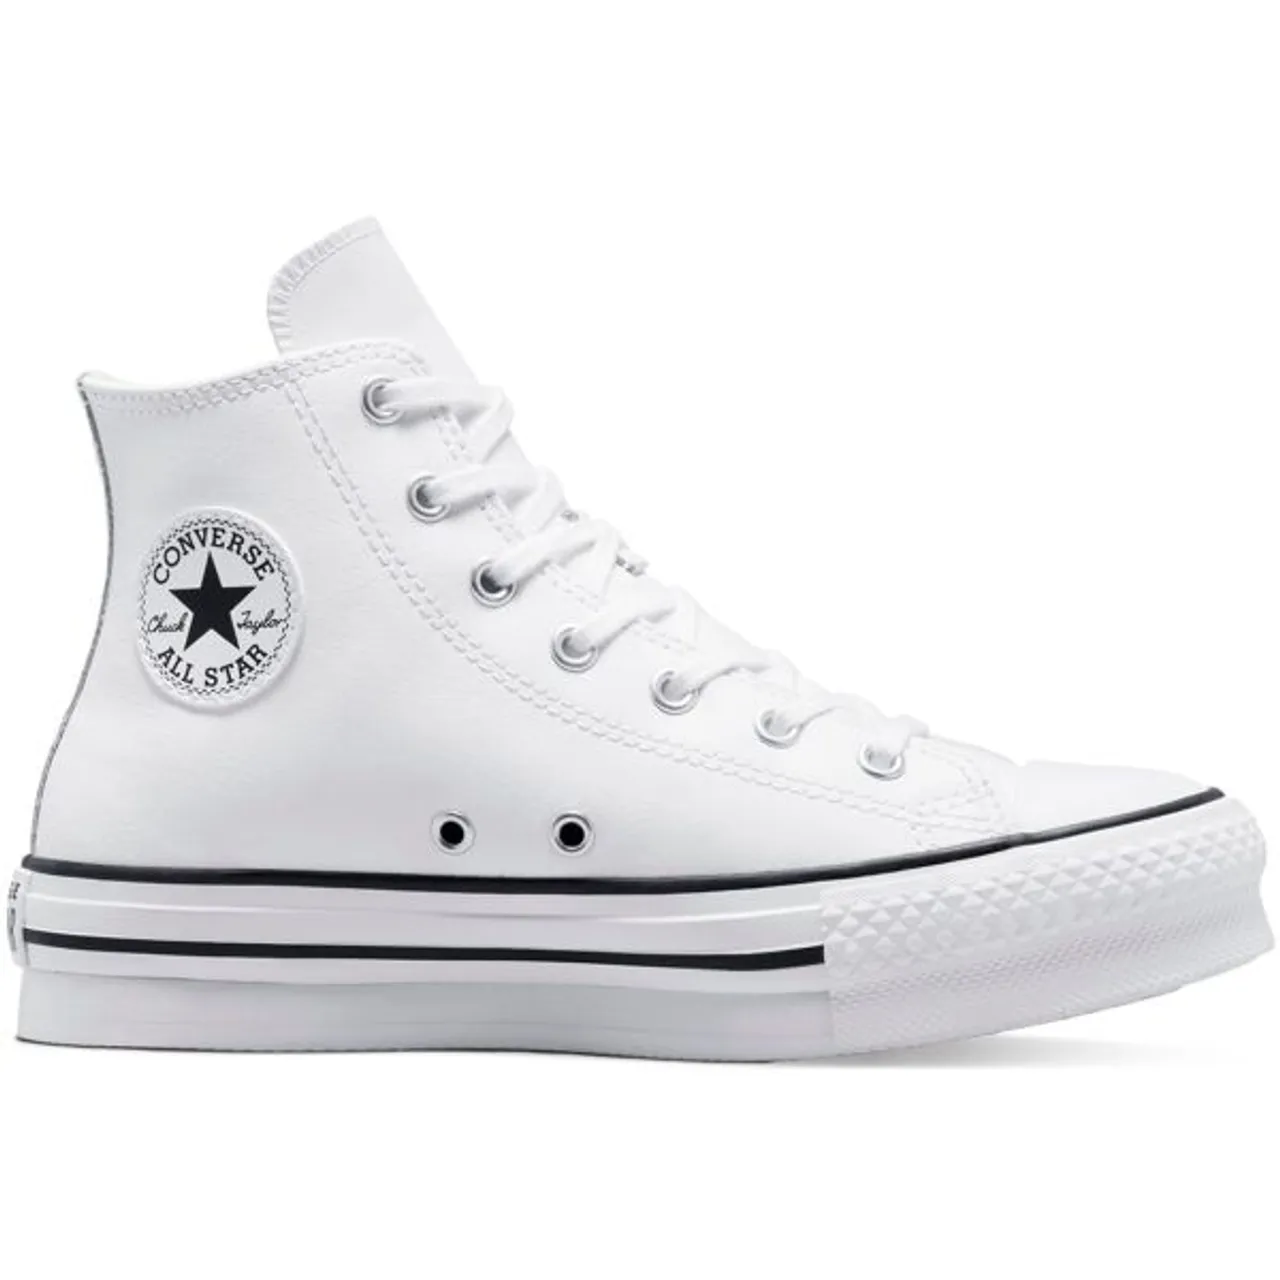 Sneaker CONVERSE "CHUCK TAYLOR ALL STAR EVA LIFT PLAT" Gr. 39, weiß (white) Schuhe Sneaker